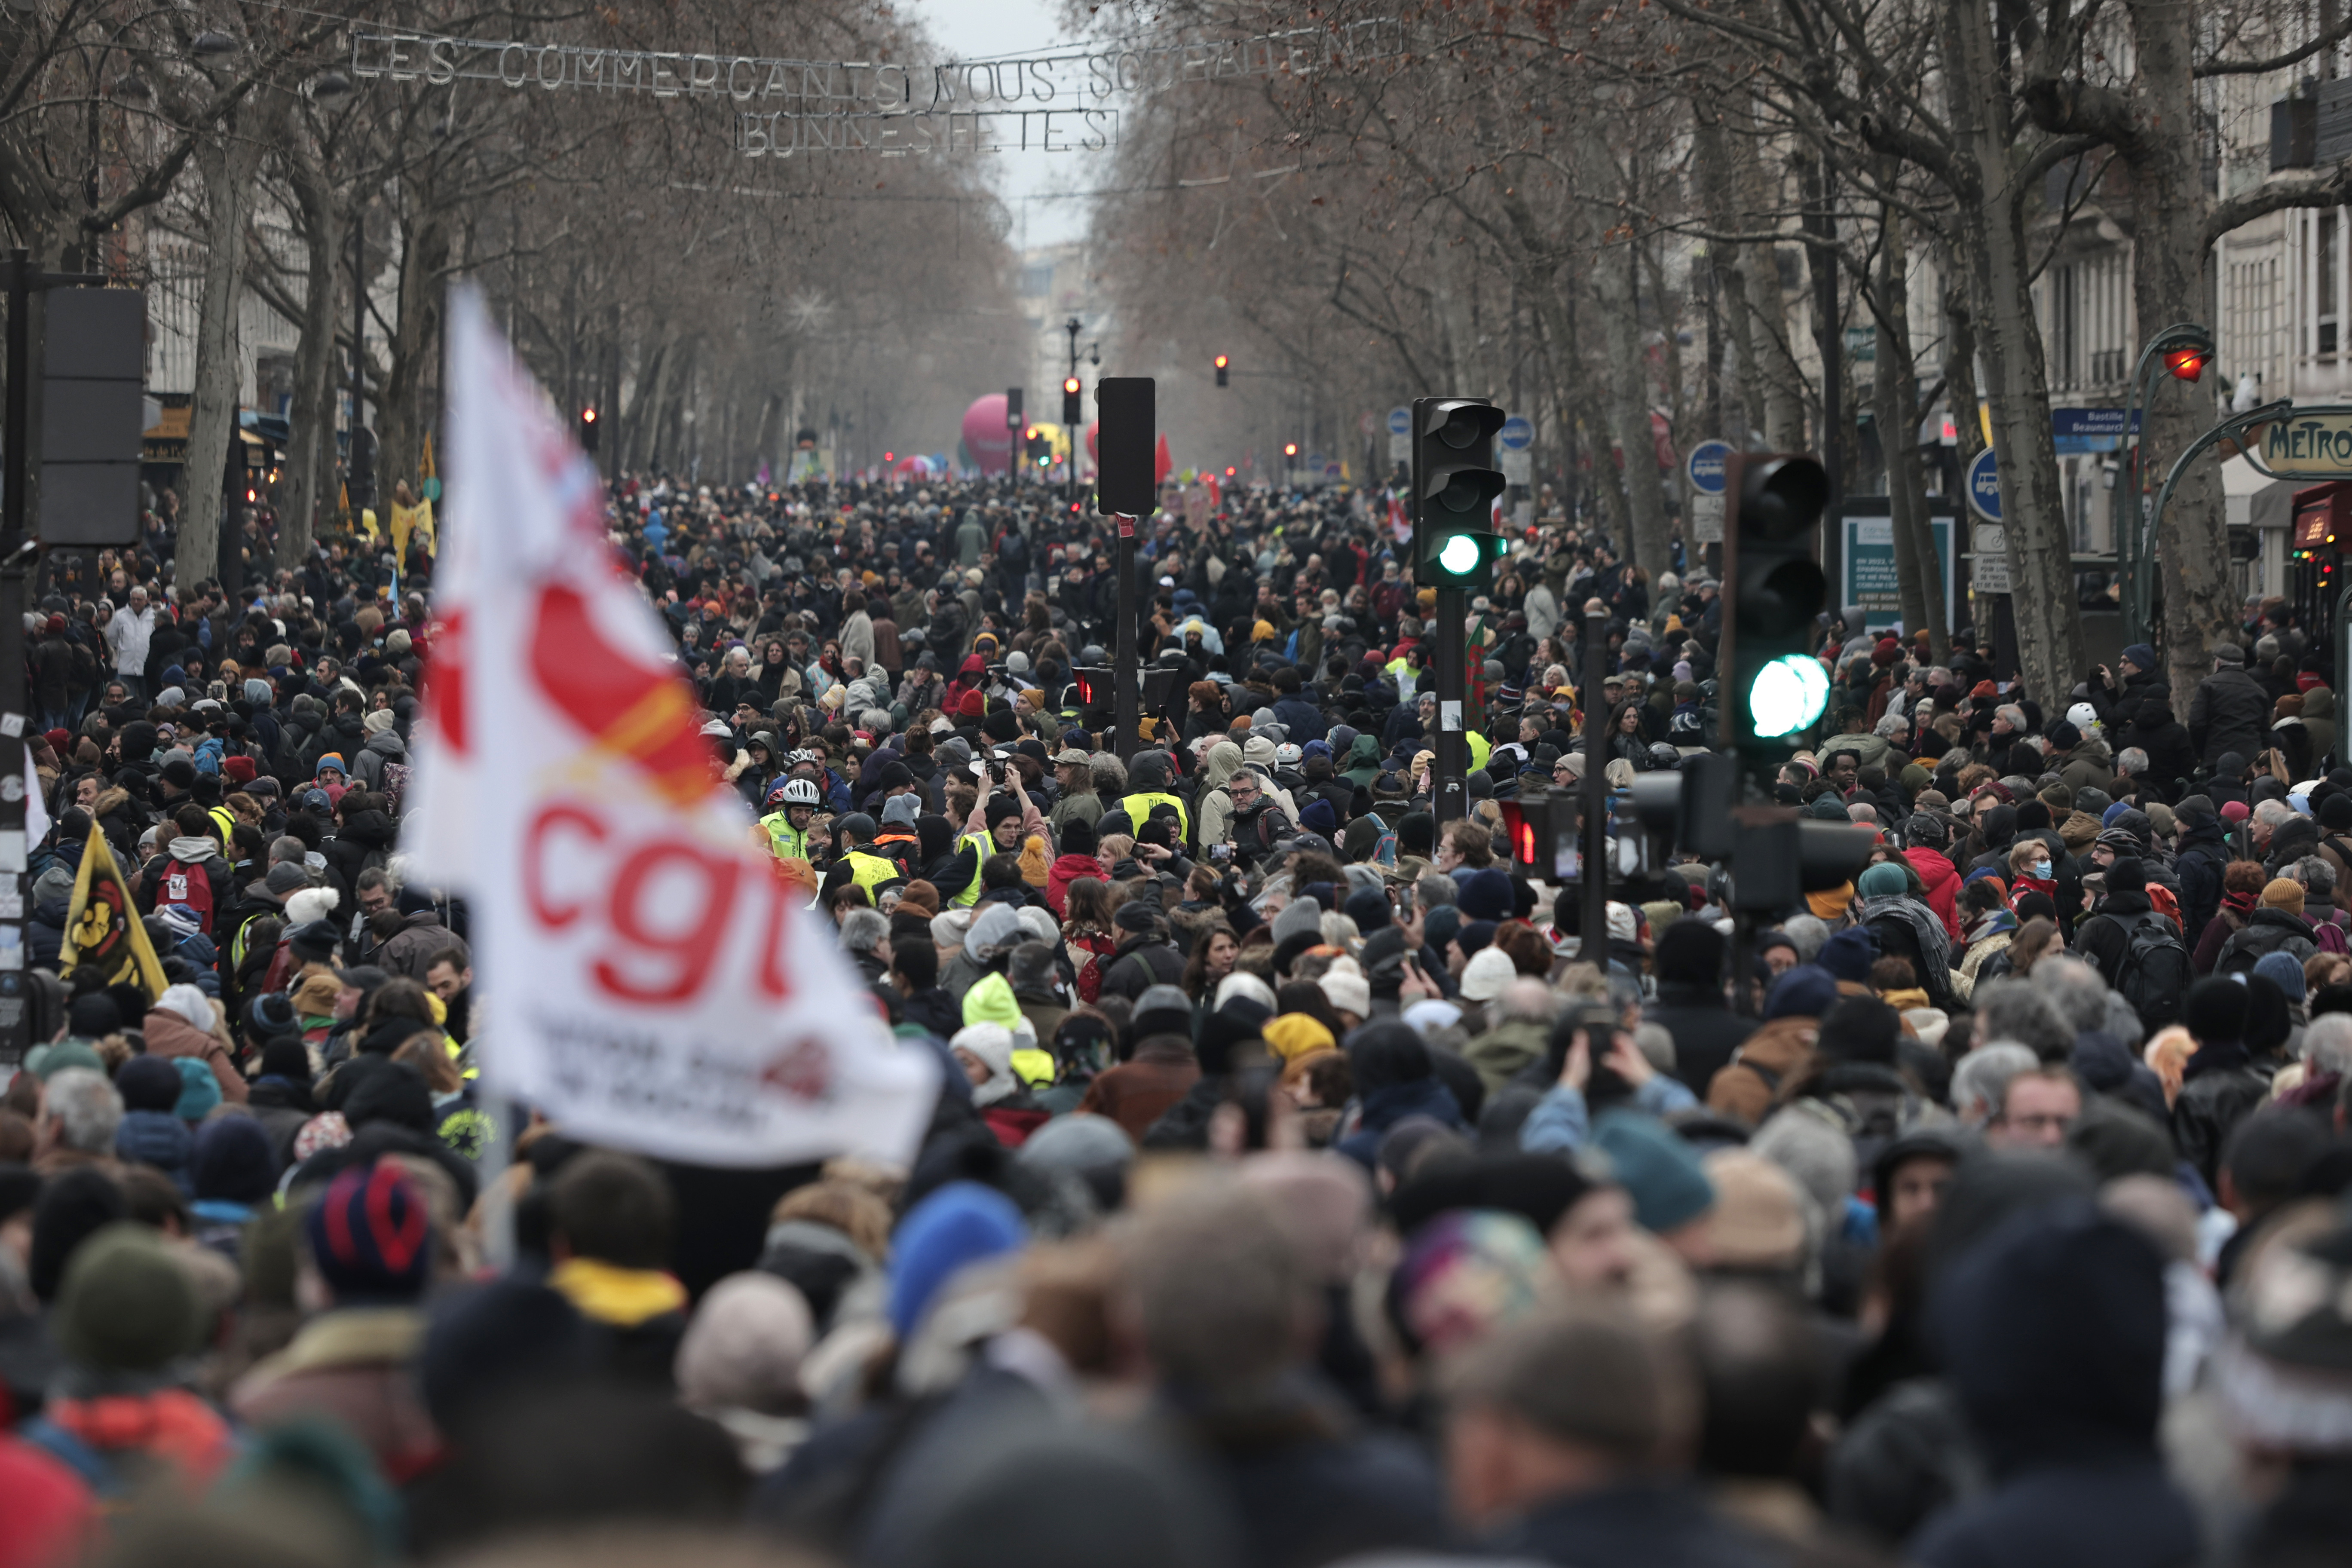 Miles de manifestantes participan en una marcha en protesta contra las reformas al sistema de pensiones propuestas por el presidente Emmanuel Macron, el jueves 19 de enero de 2023 en París. (AP Foto/Lewis Joly)